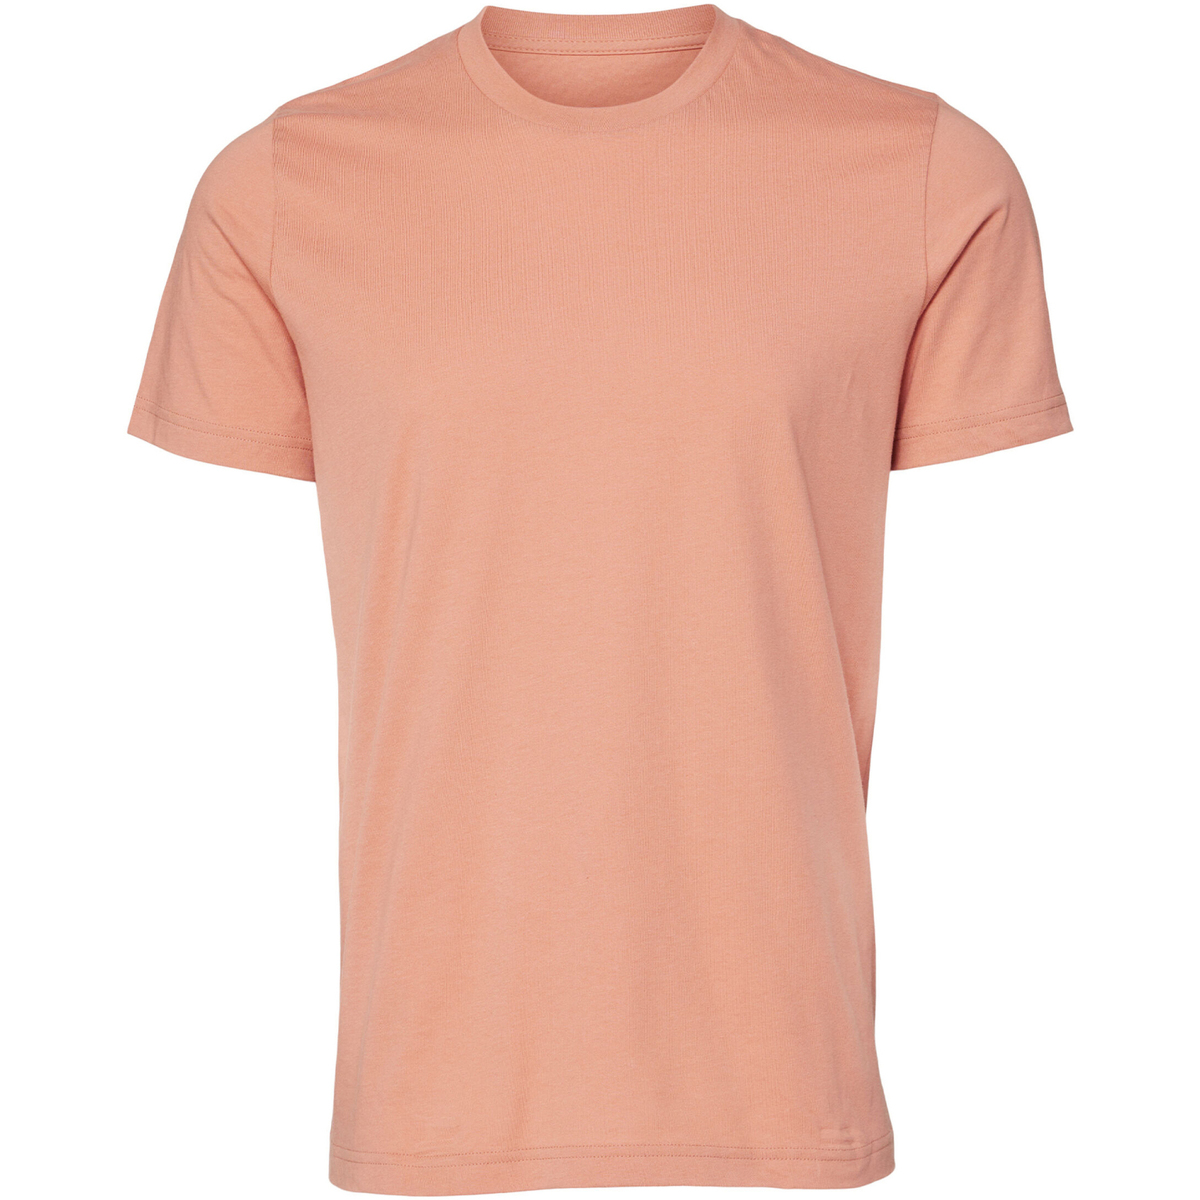 Abbigliamento Uomo T-shirt maniche corte Bella + Canvas CA3001 Multicolore